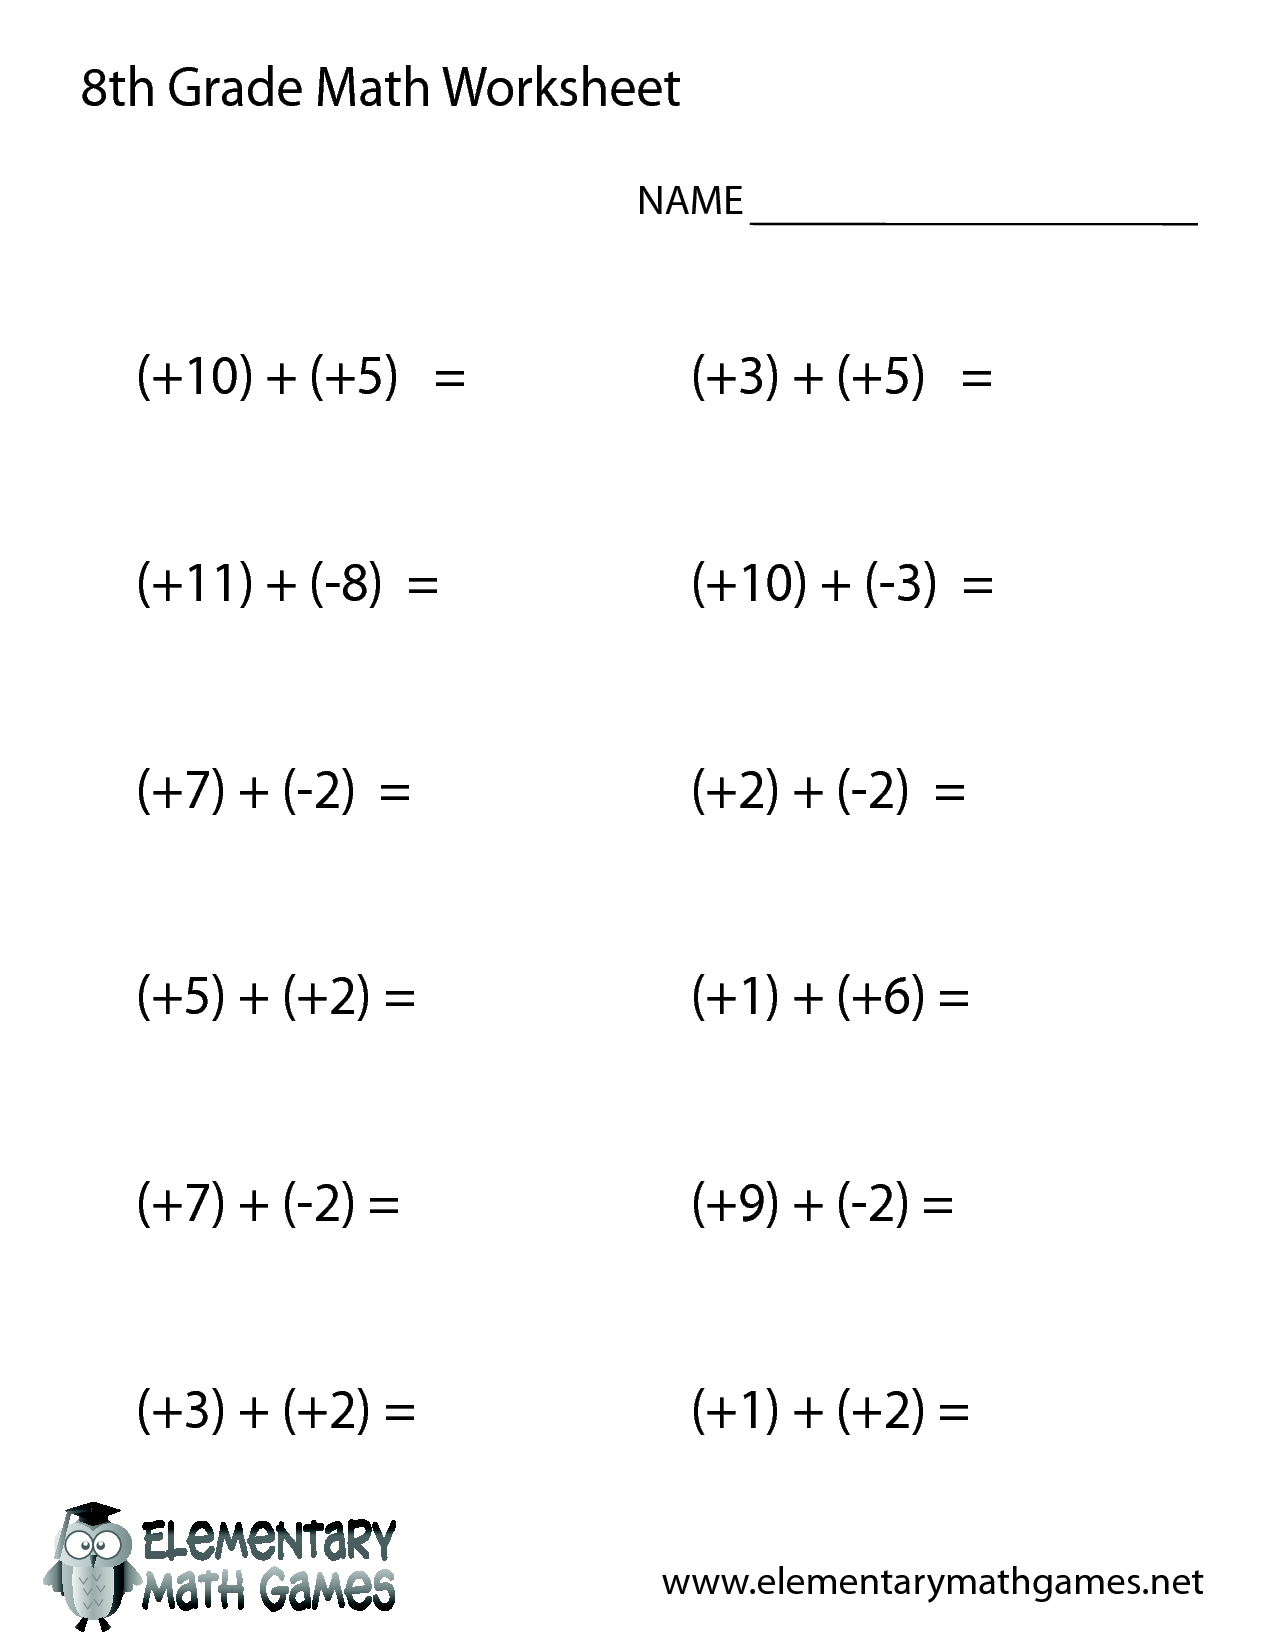 8th Grade Math Worksheets Printable 